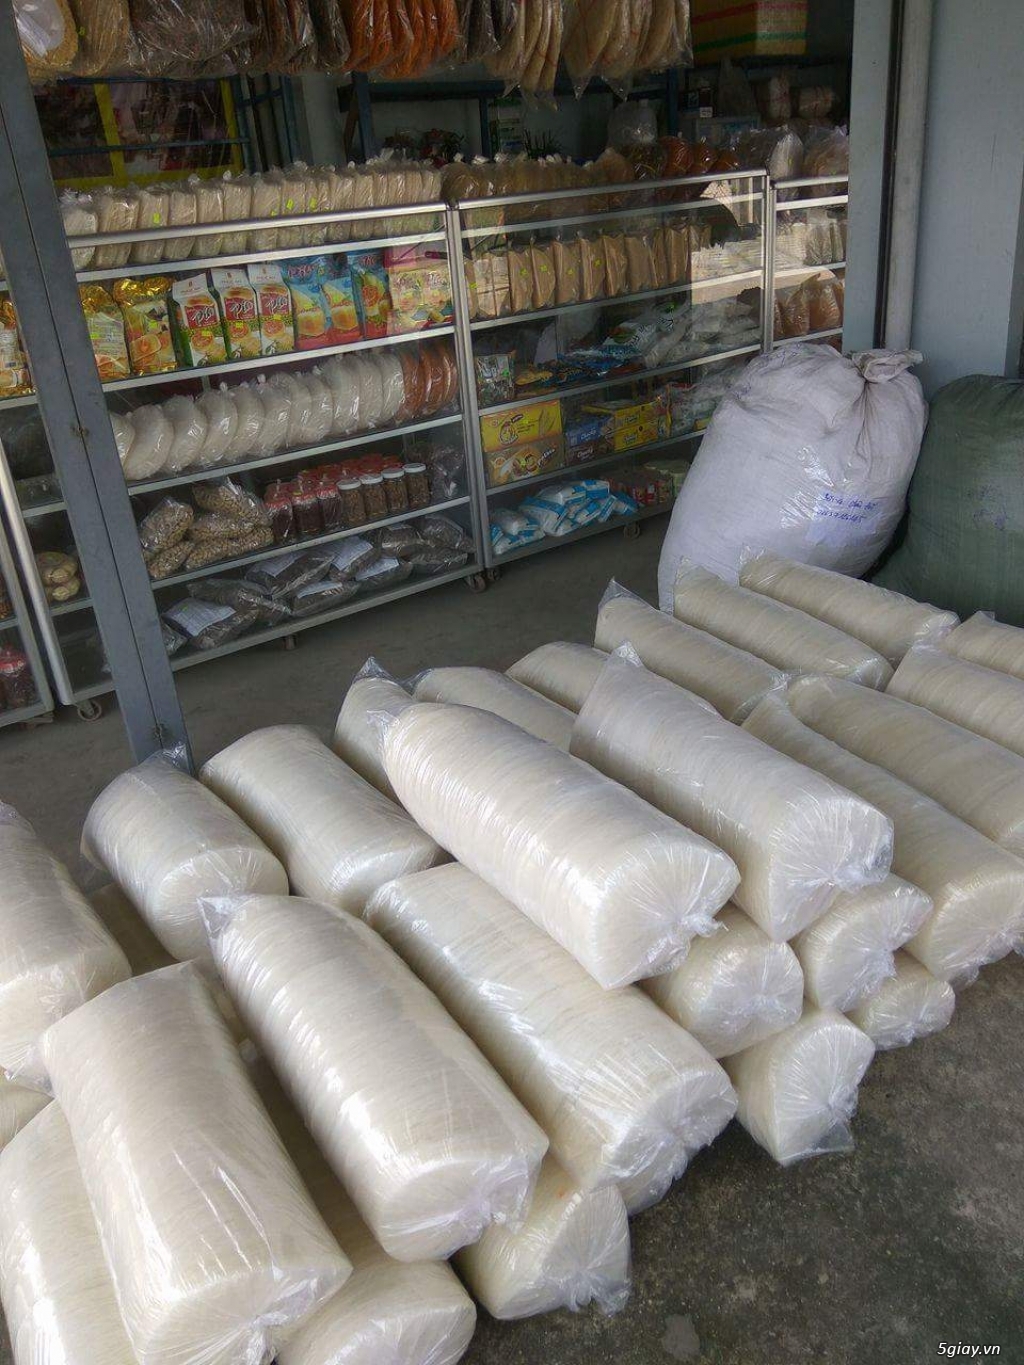 Đặc sản Tây Ninh-Thu Ngân cung cấp sỉ & lẻ các loại bánh tráng & muối các loại... - 31